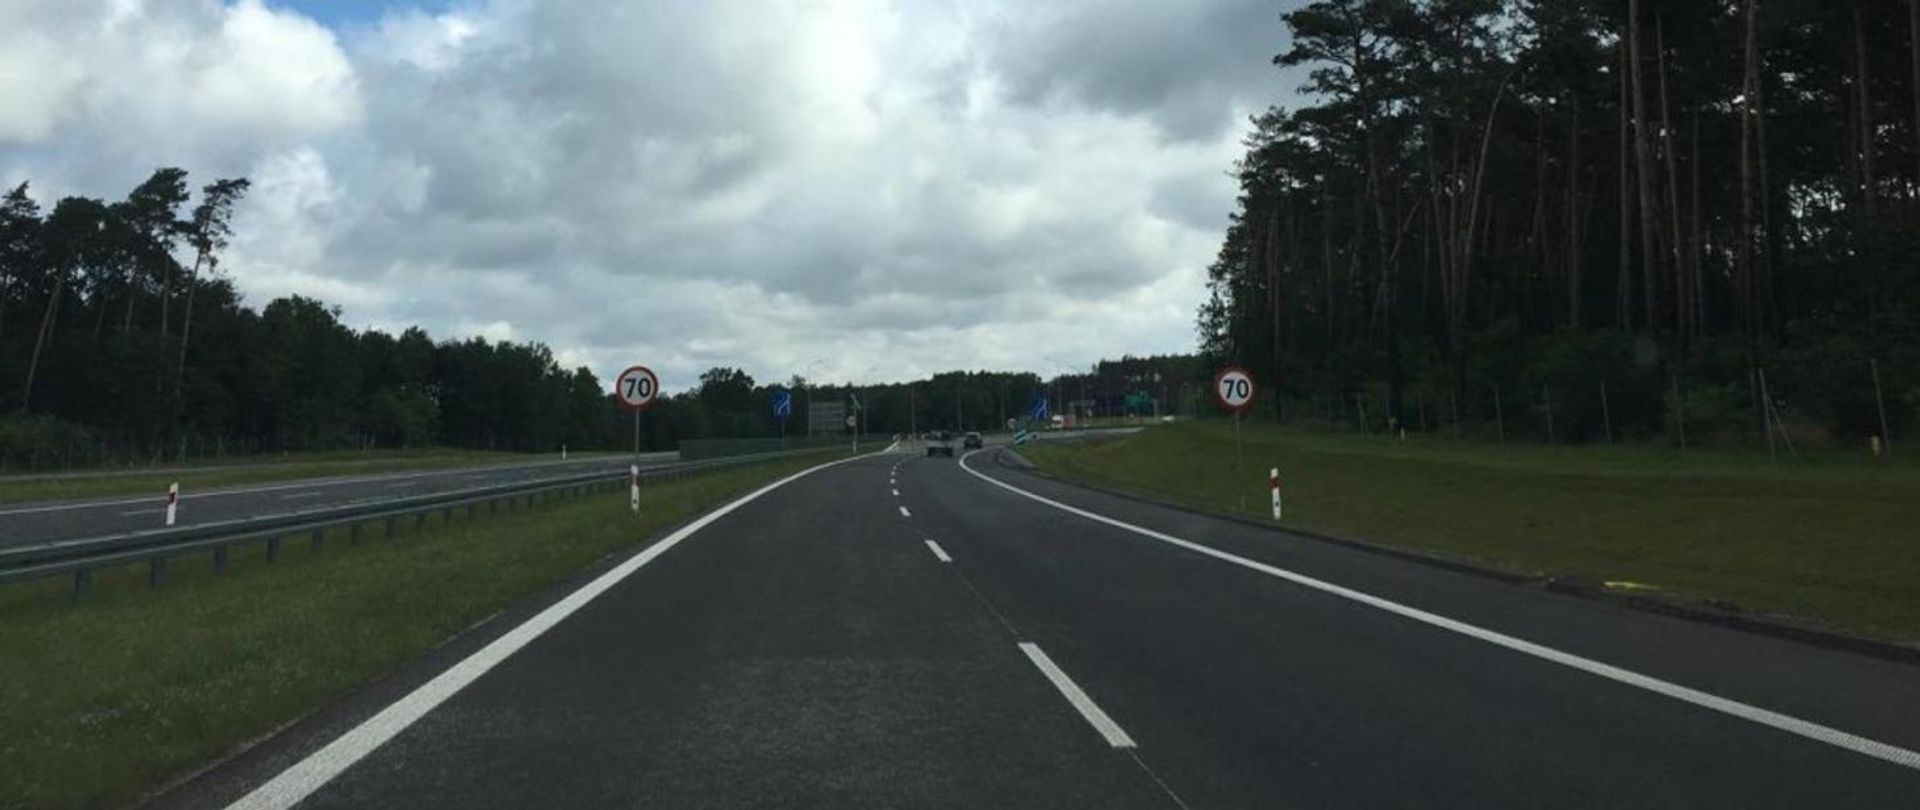 GDDKiA uzyskała decyzję środowiskową dla drogi ekspresowej S11 Ostrów Wielkopolski - Ostrzeszów - Kępno